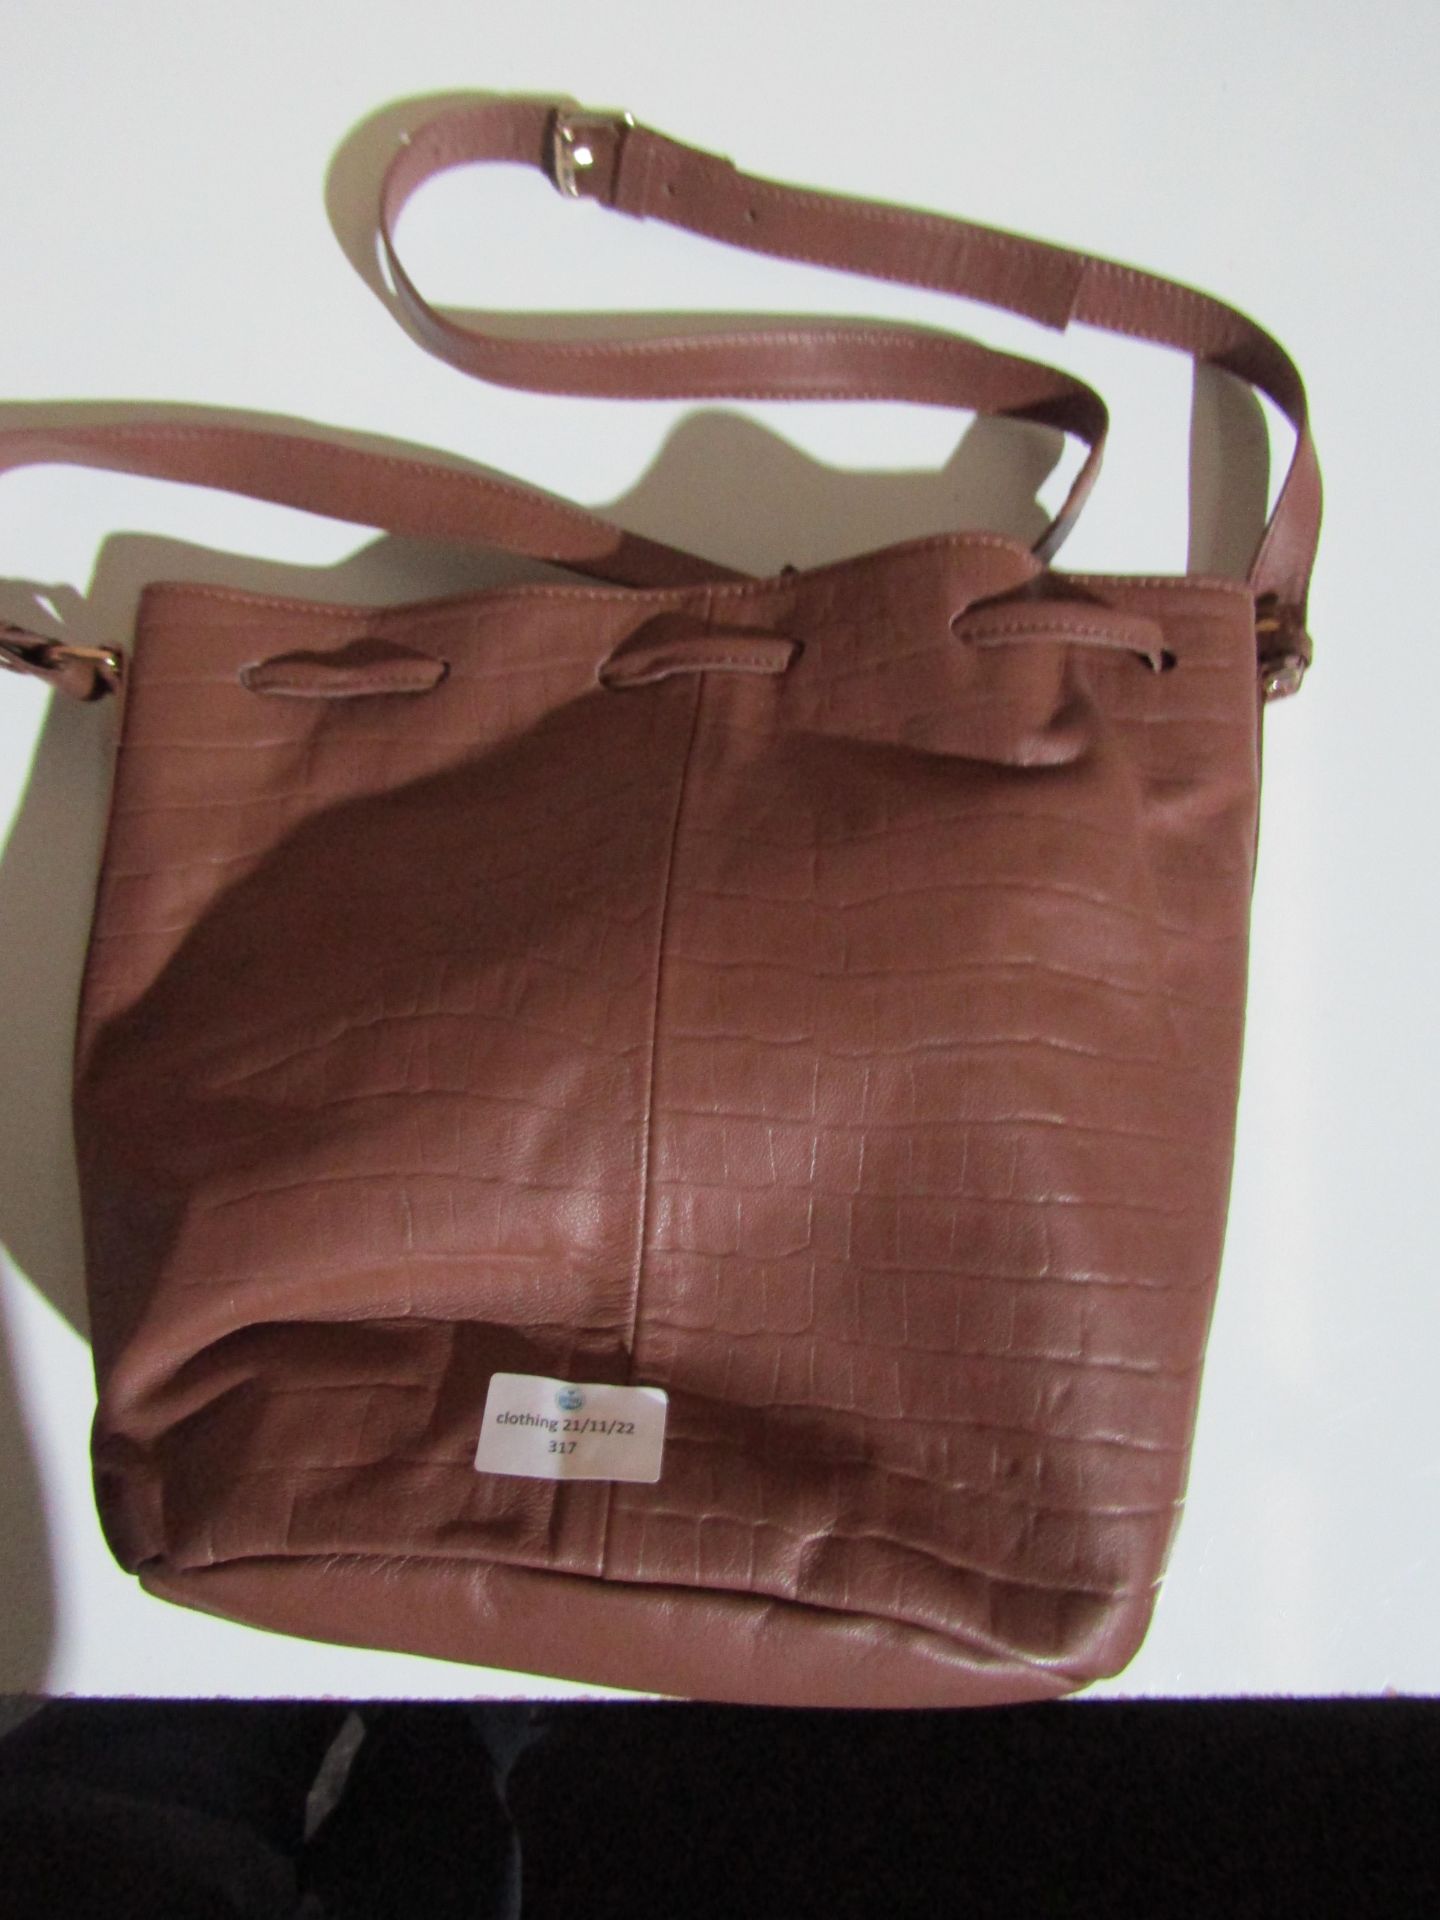 Unbranded Tan Coloured Bag Looks Unused